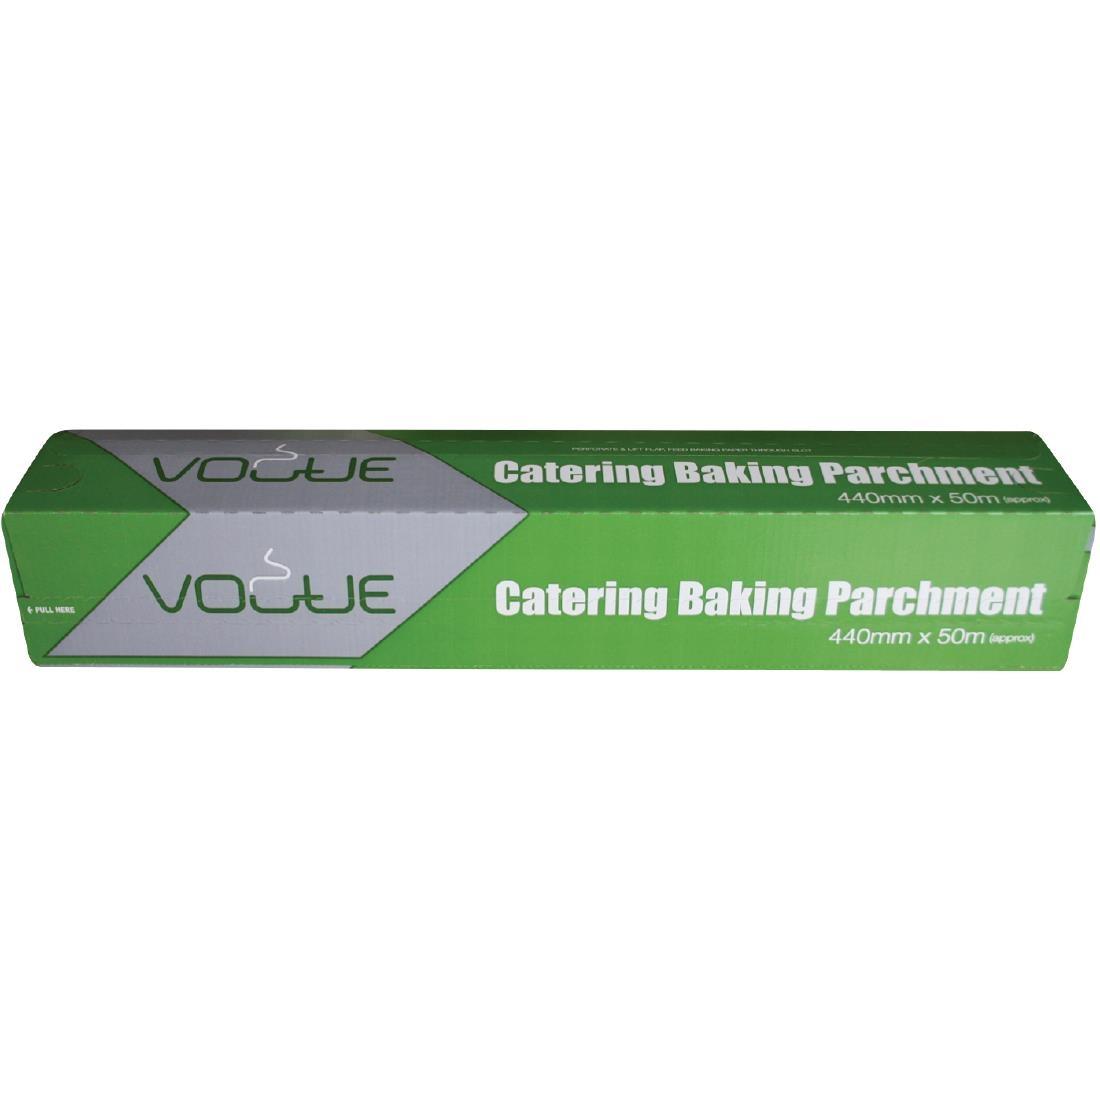 Vogue Baking Parchment Paper 440mm x 50m - DM177  - 2